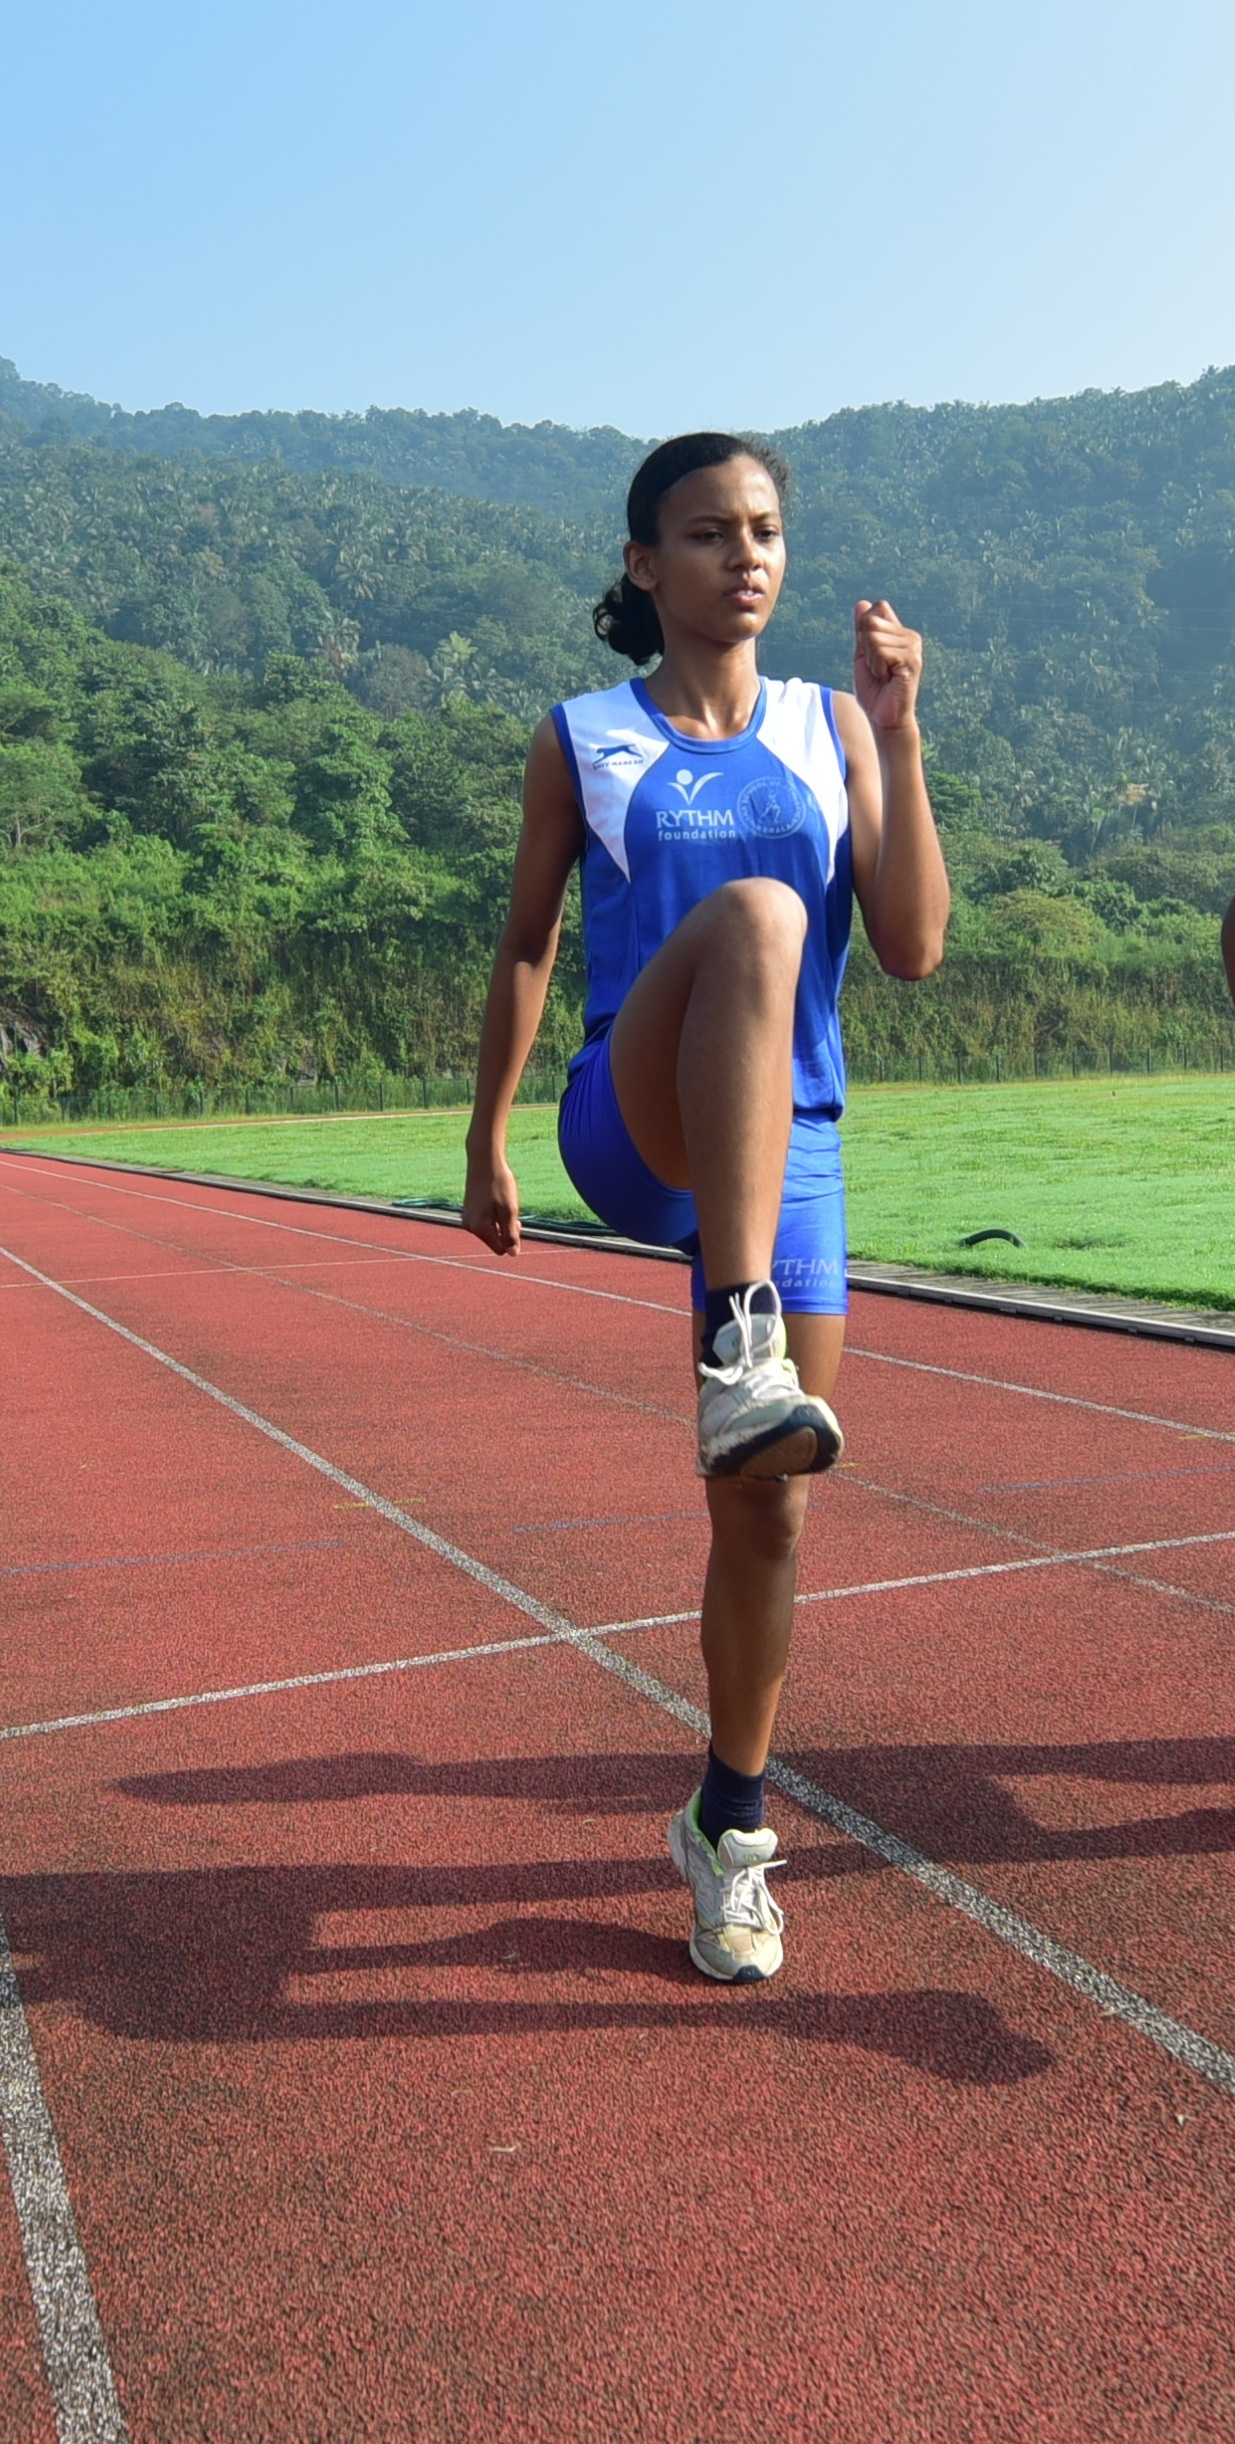 RYTHM Foundation and Usha School of Athletics help Prathibha Varghese chase her athletic dreams